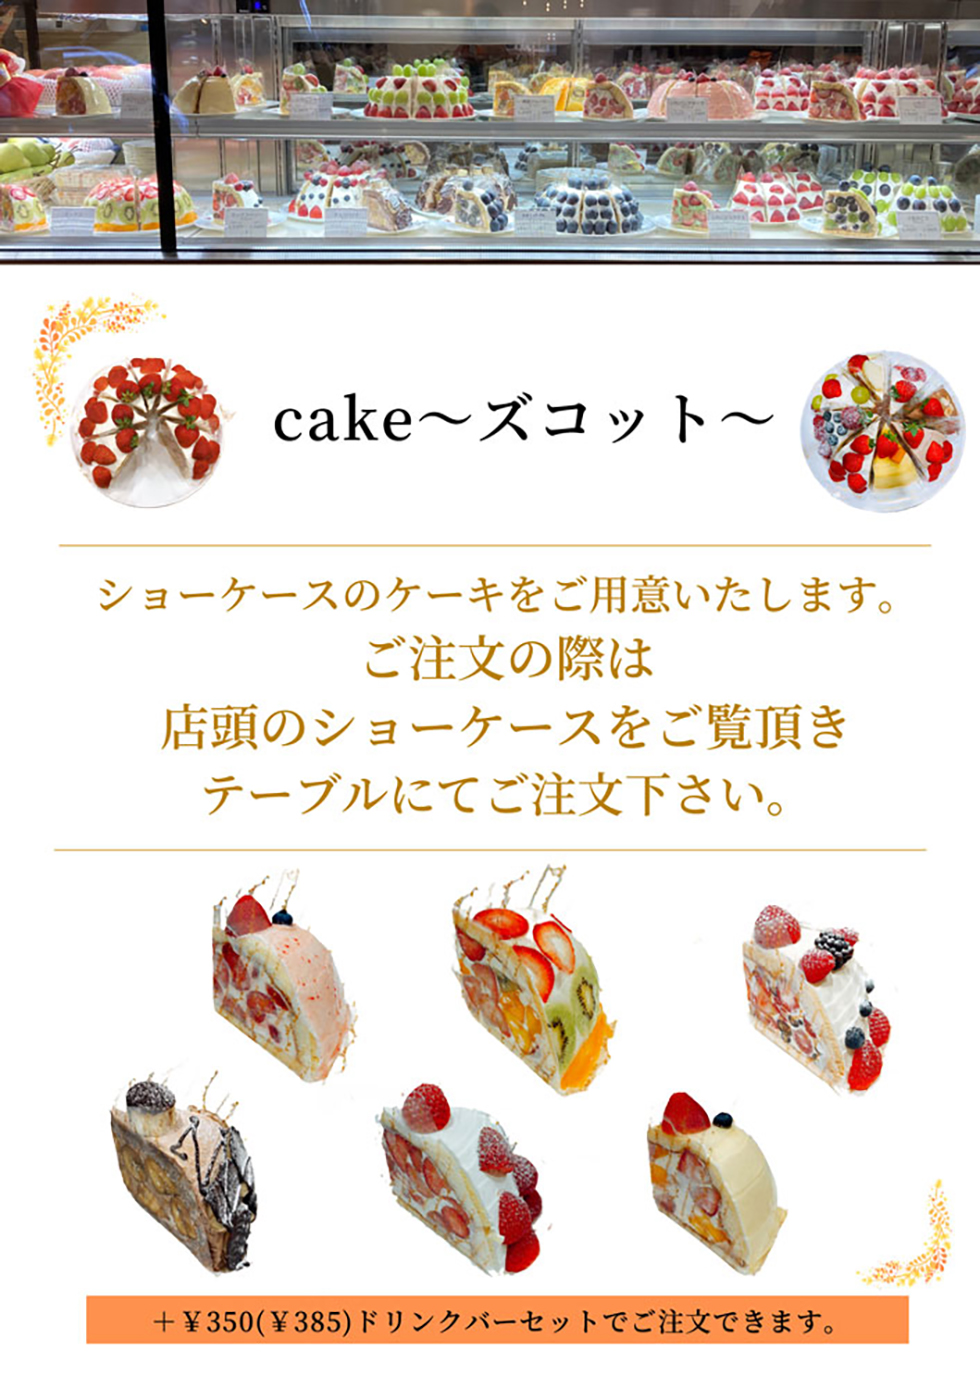 日比谷店のデザートメニューケーキ